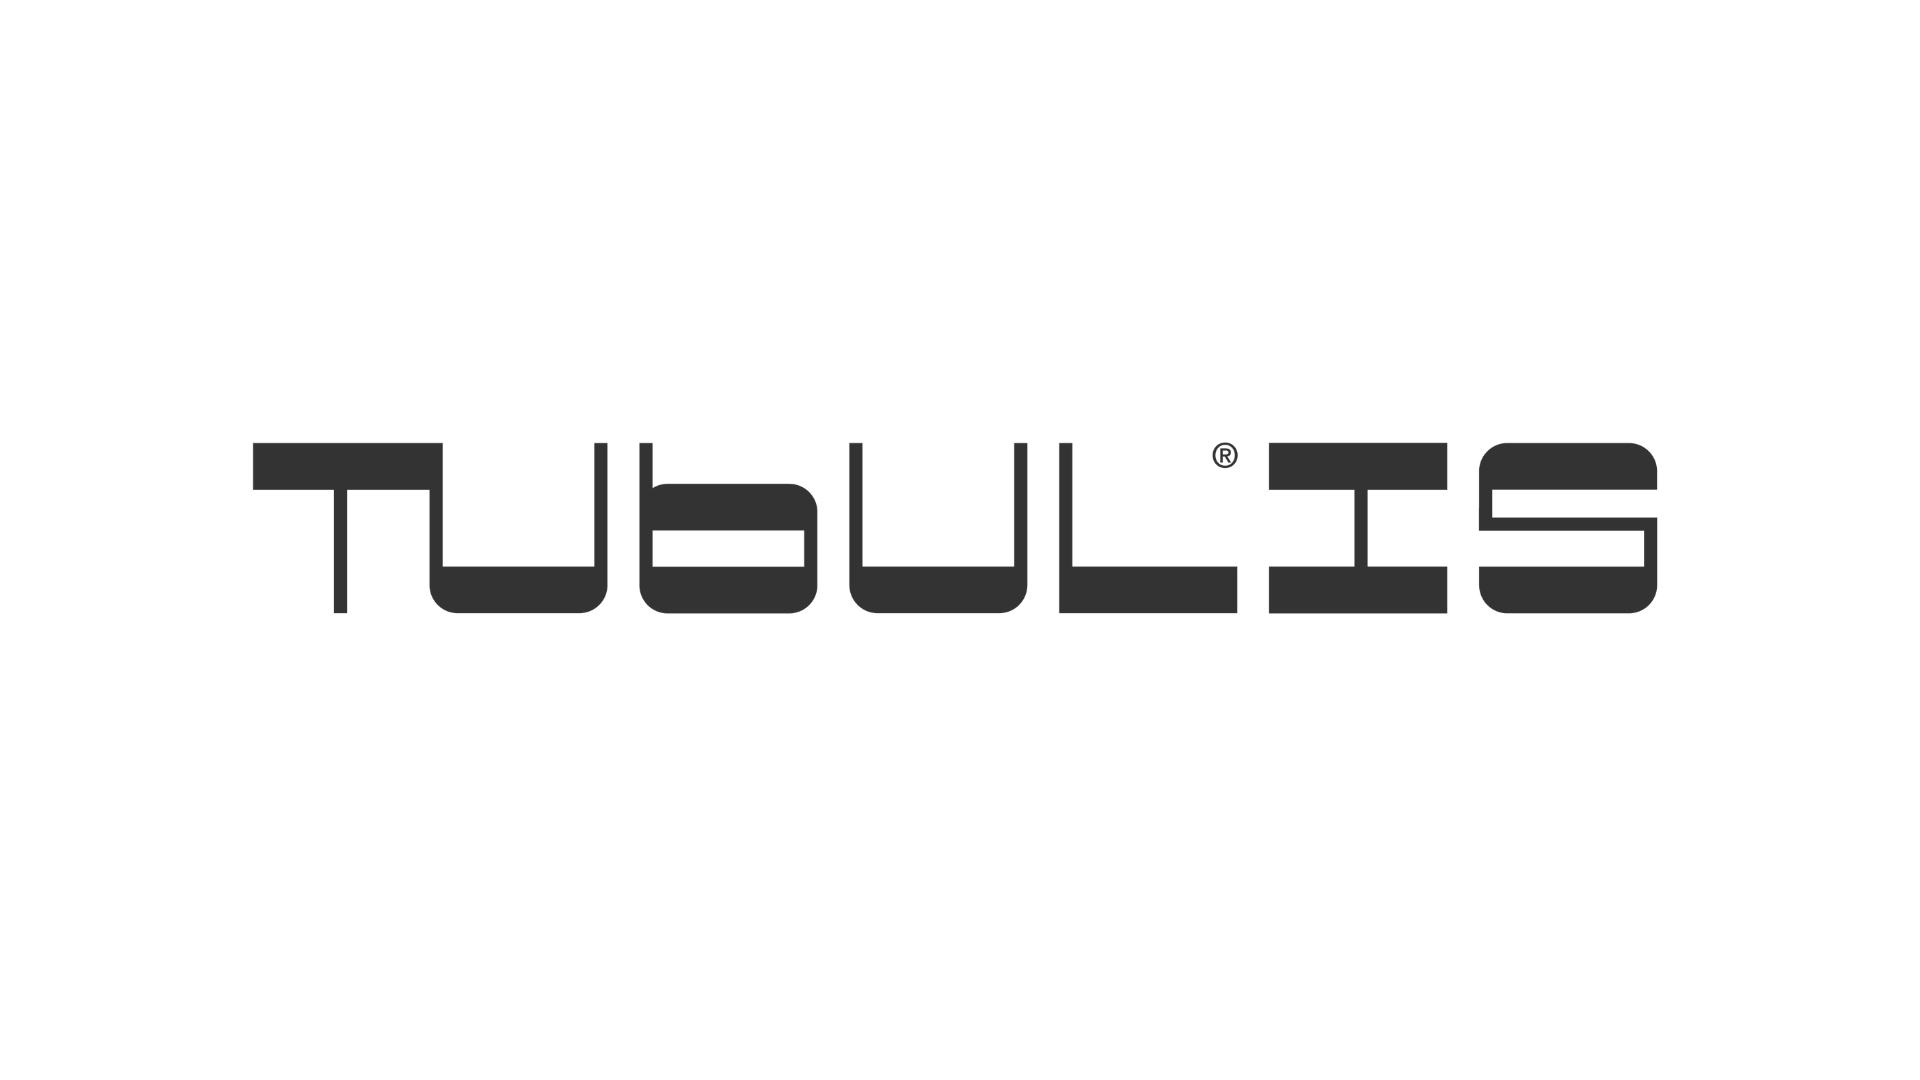 Tubulis startup